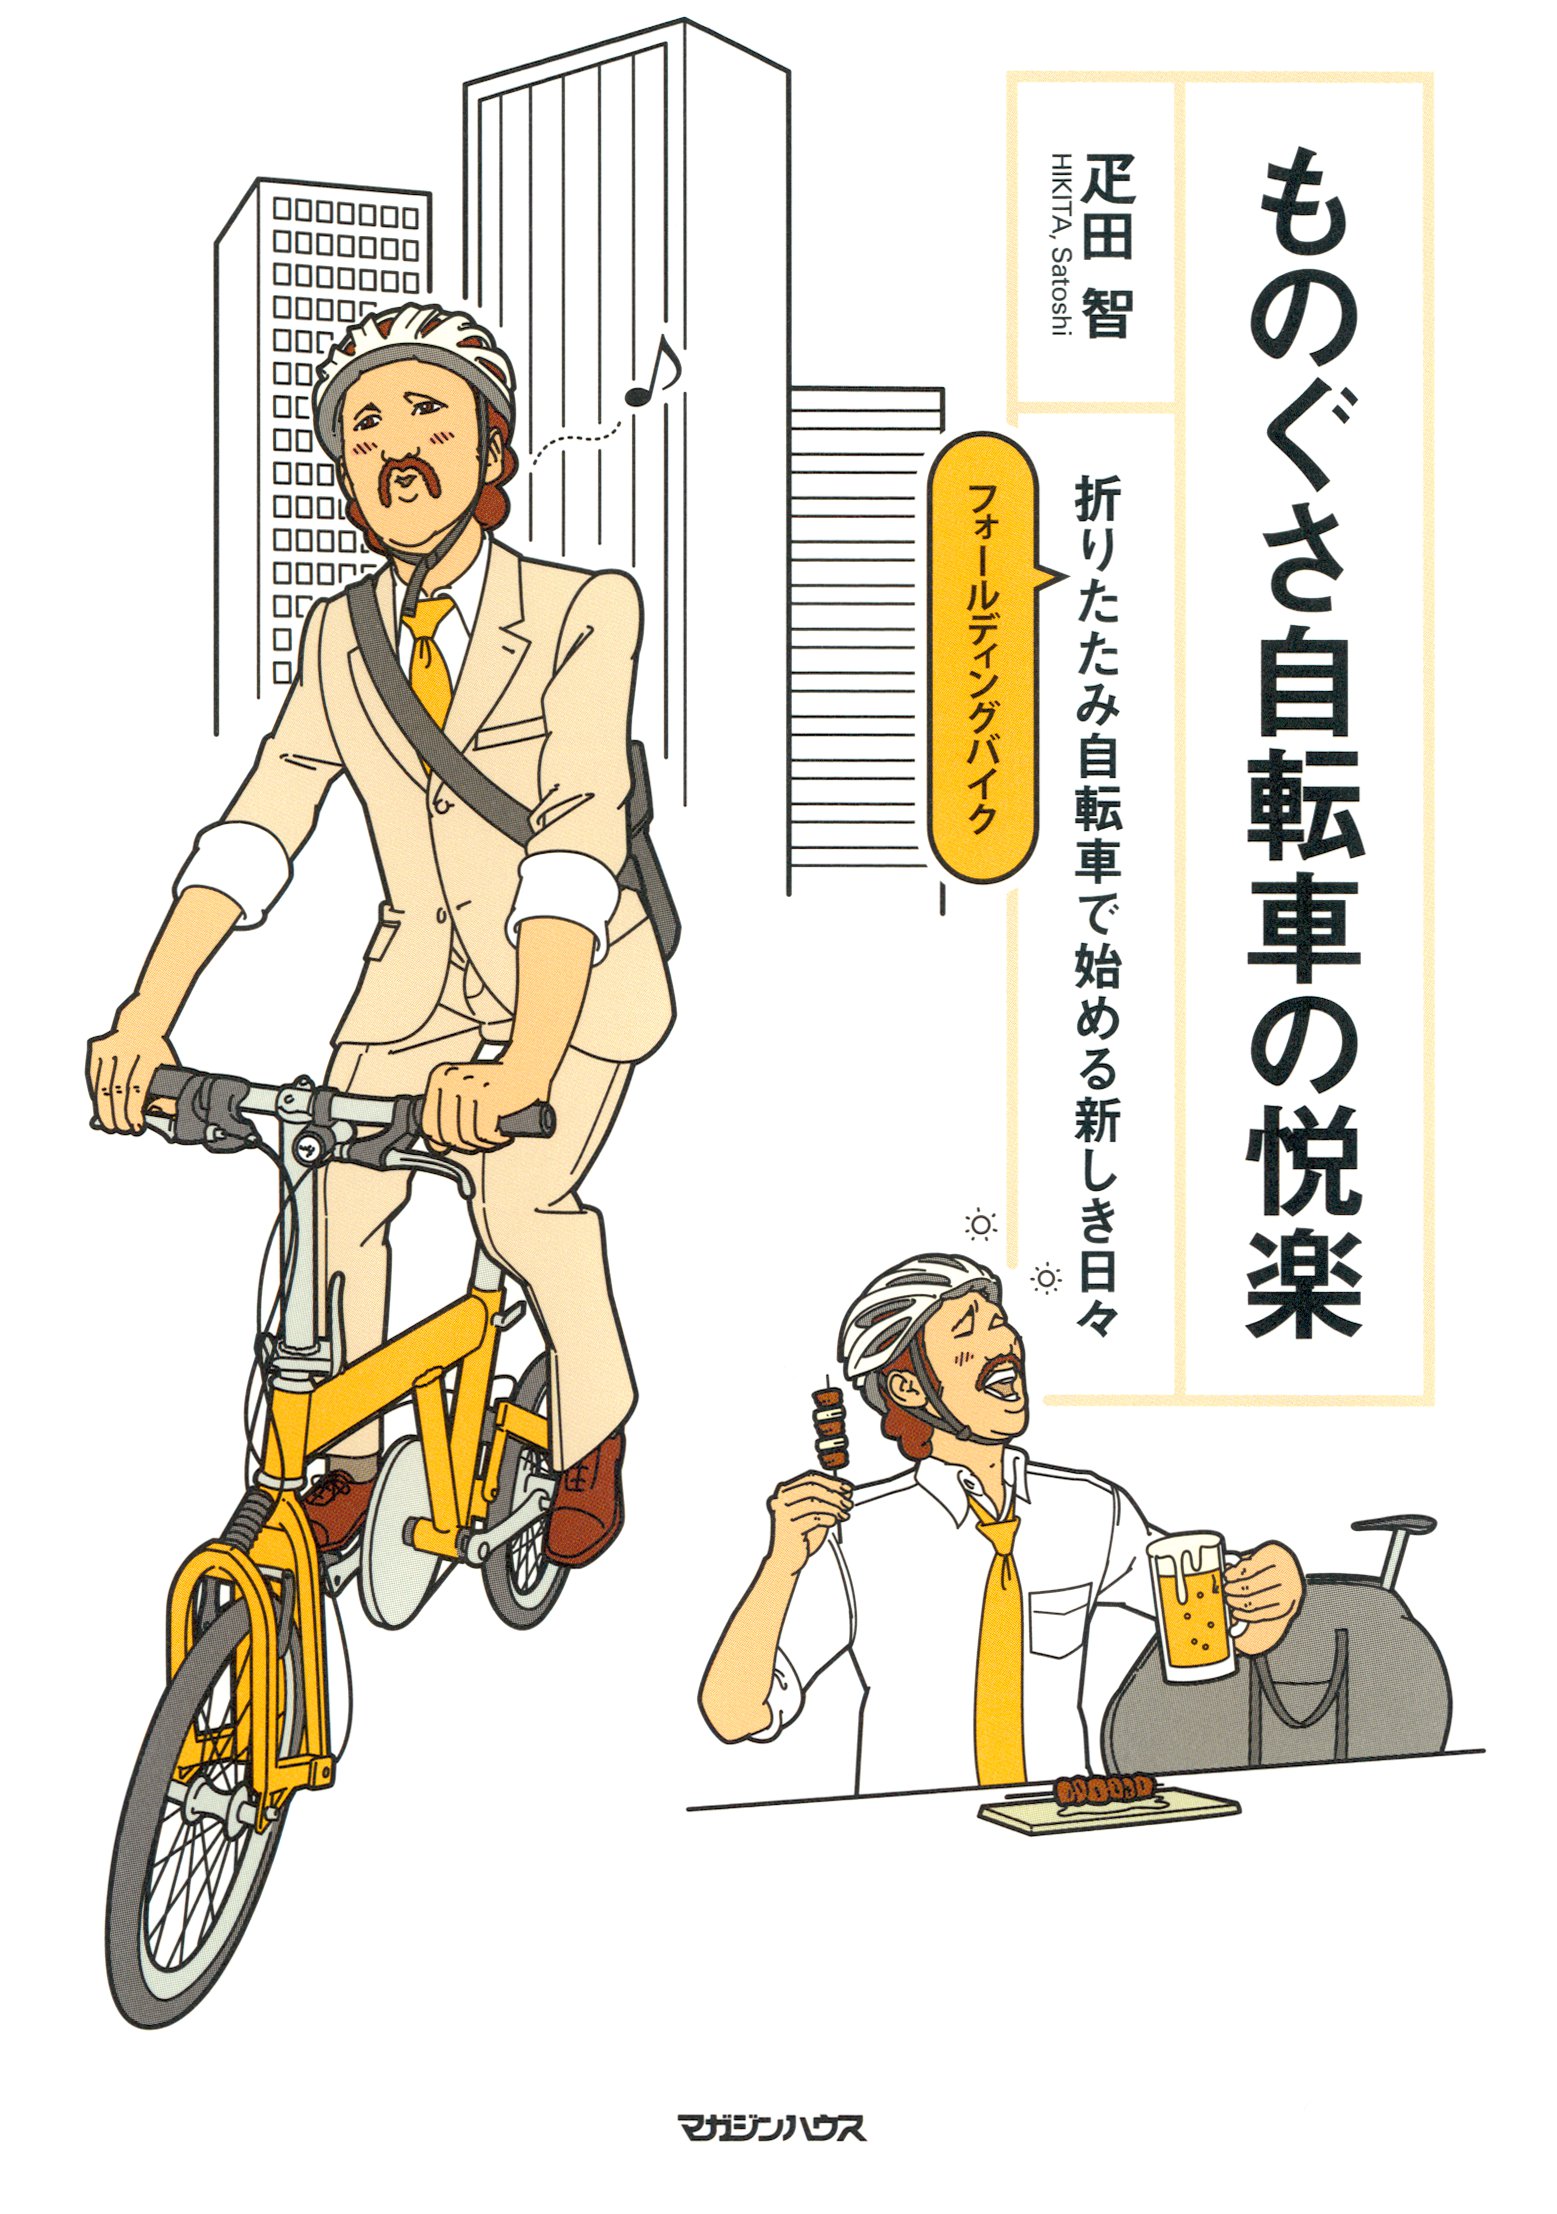 ものぐさ自転車の悦楽 折りたたみ自転車で始める新しき日々 - 疋田智